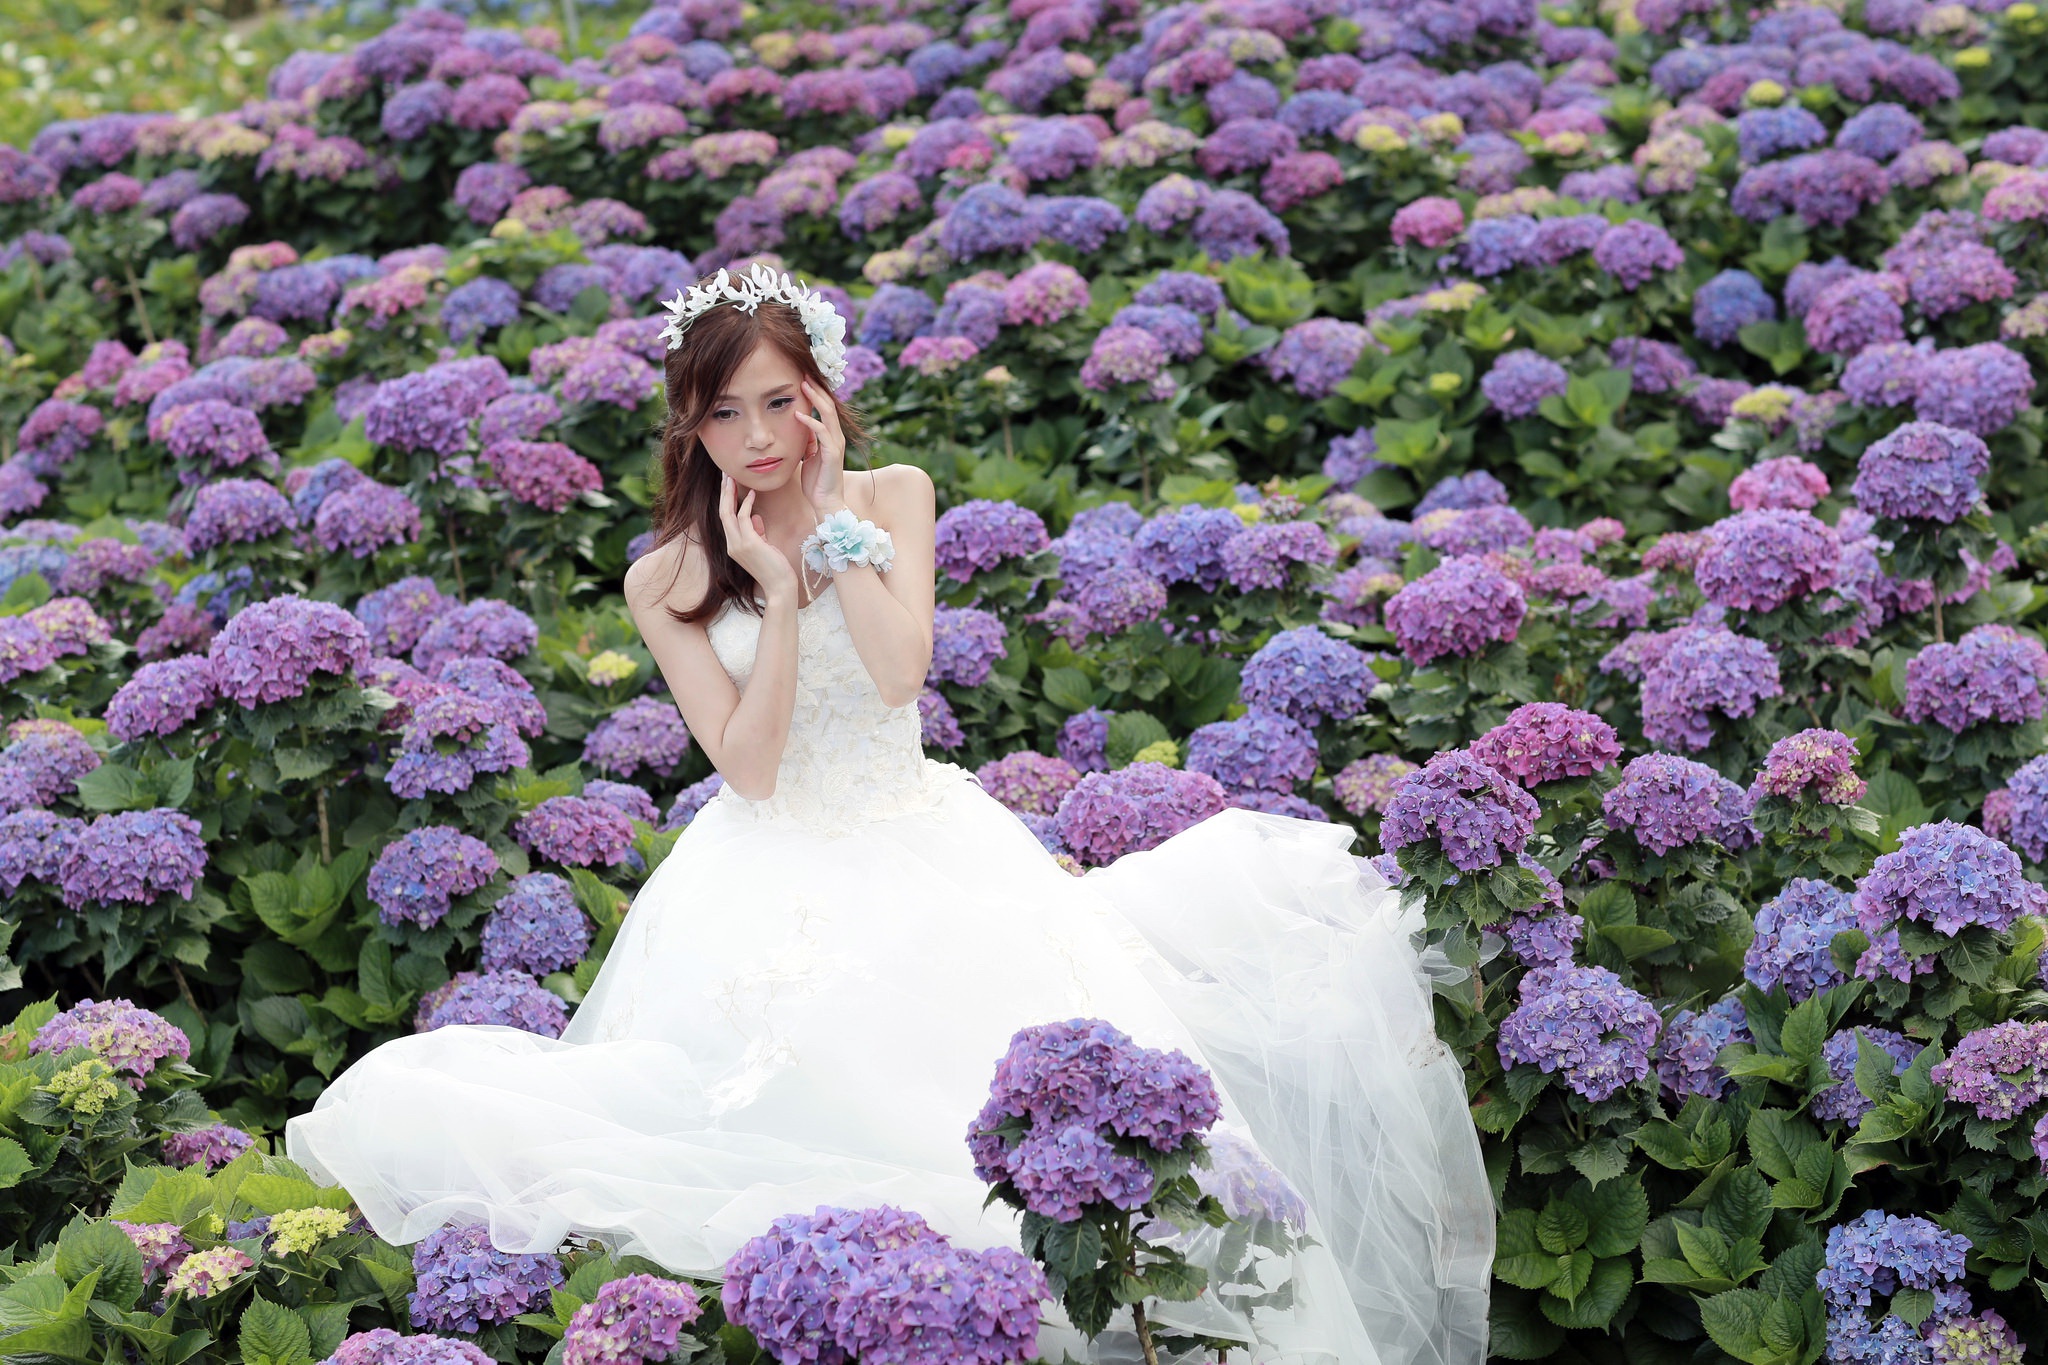 Asian Bride Brunette Flower Girl Hydrangea Model Purple Flower Wedding Dress White Dress Woman 2048x1365